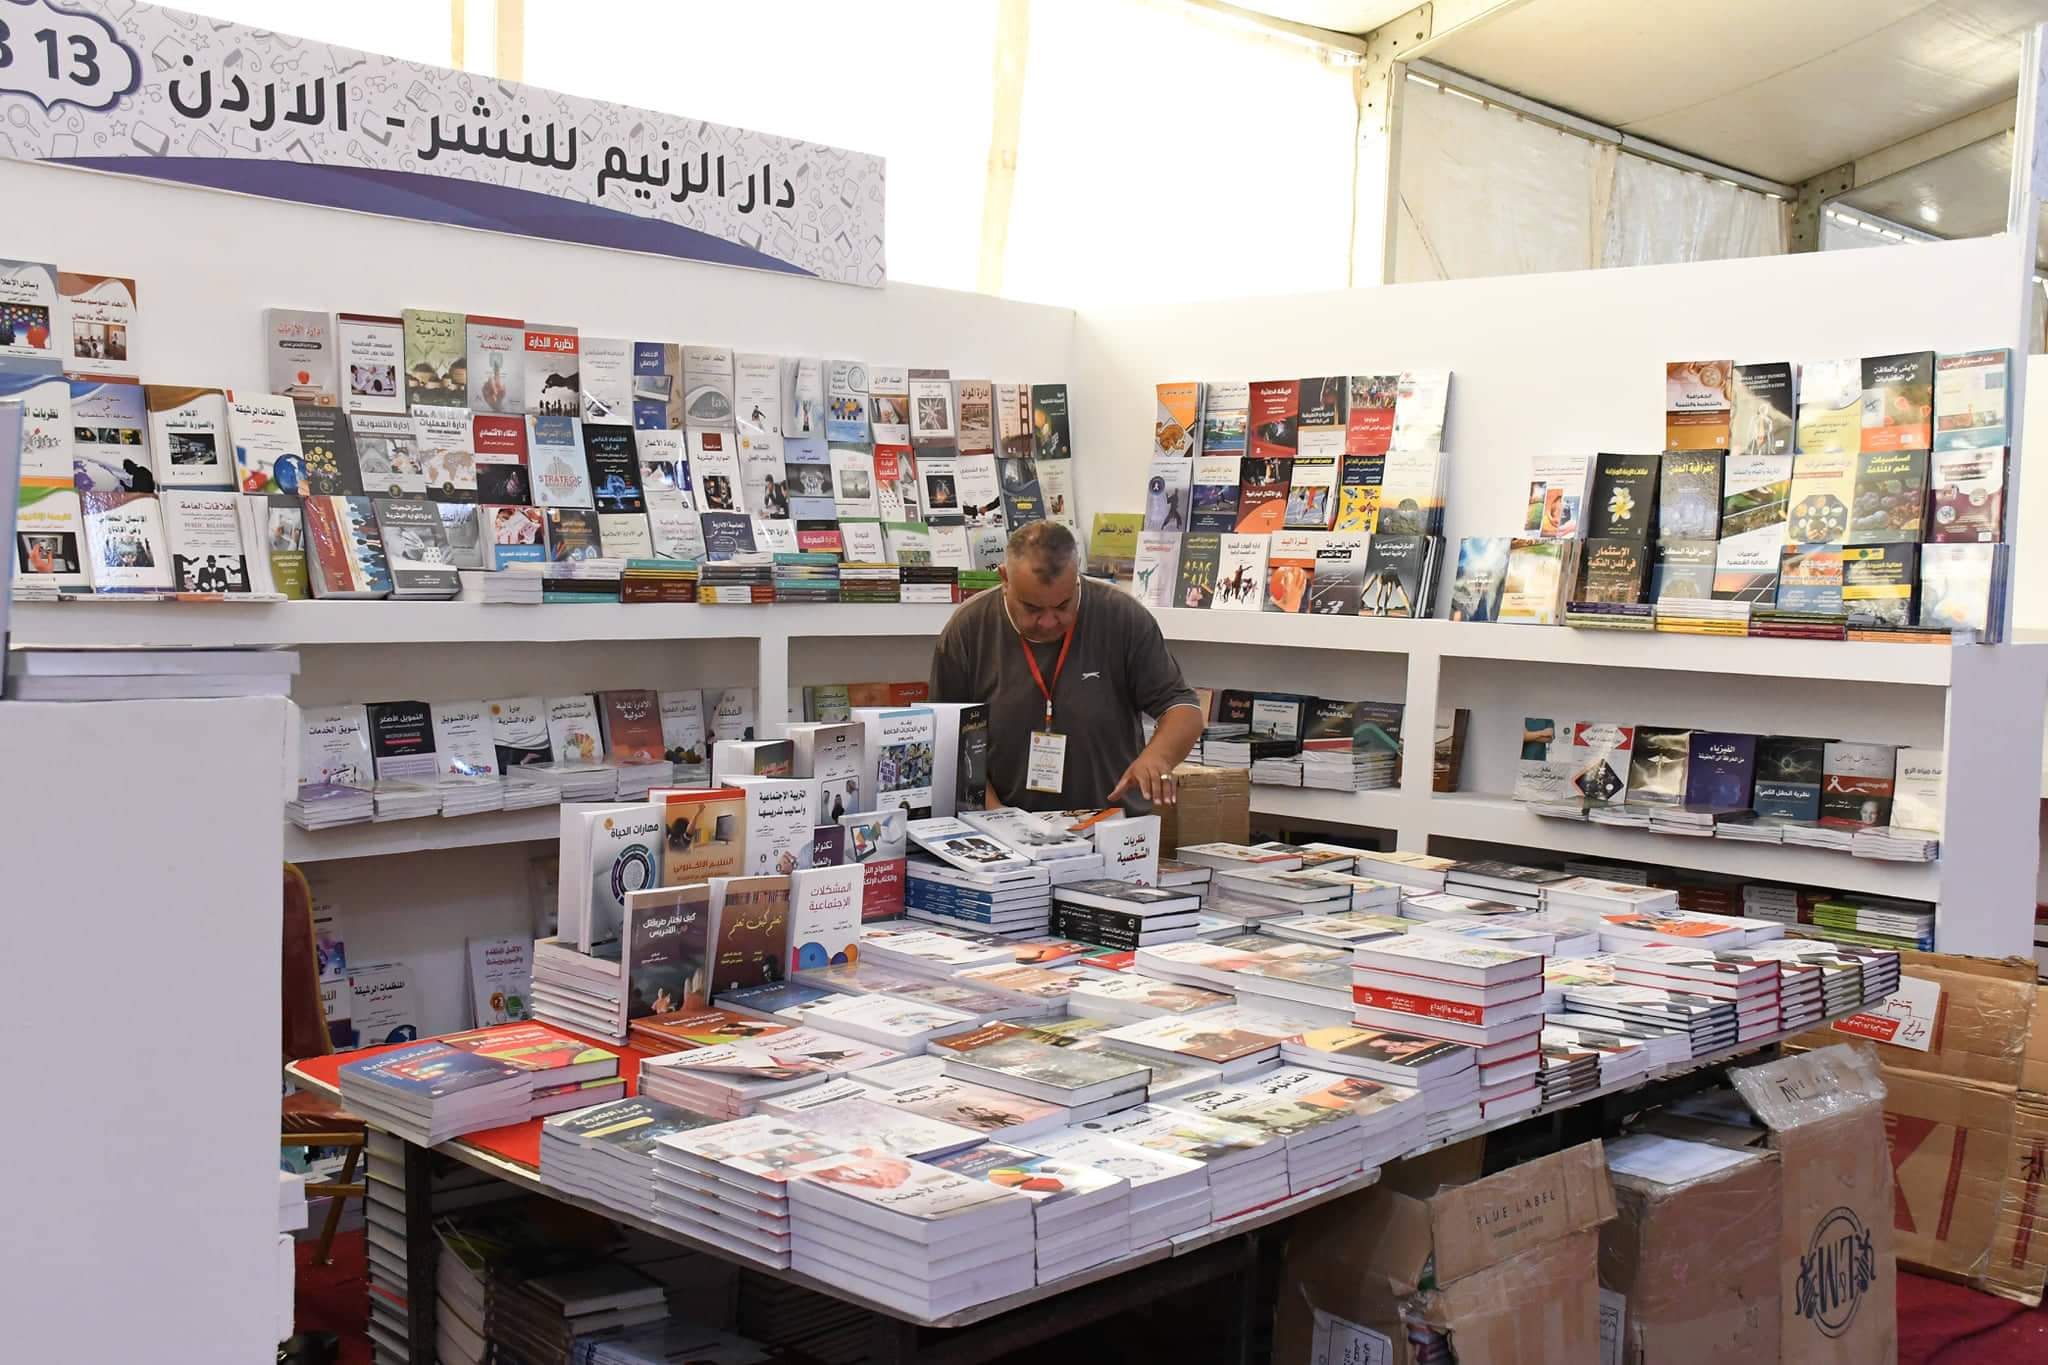 اليوم الأحد .. معرض بنغازي الدولي للكتاب يفتح أبوابه أمام جميع الزوار على تمام الساعة الحادية عشر